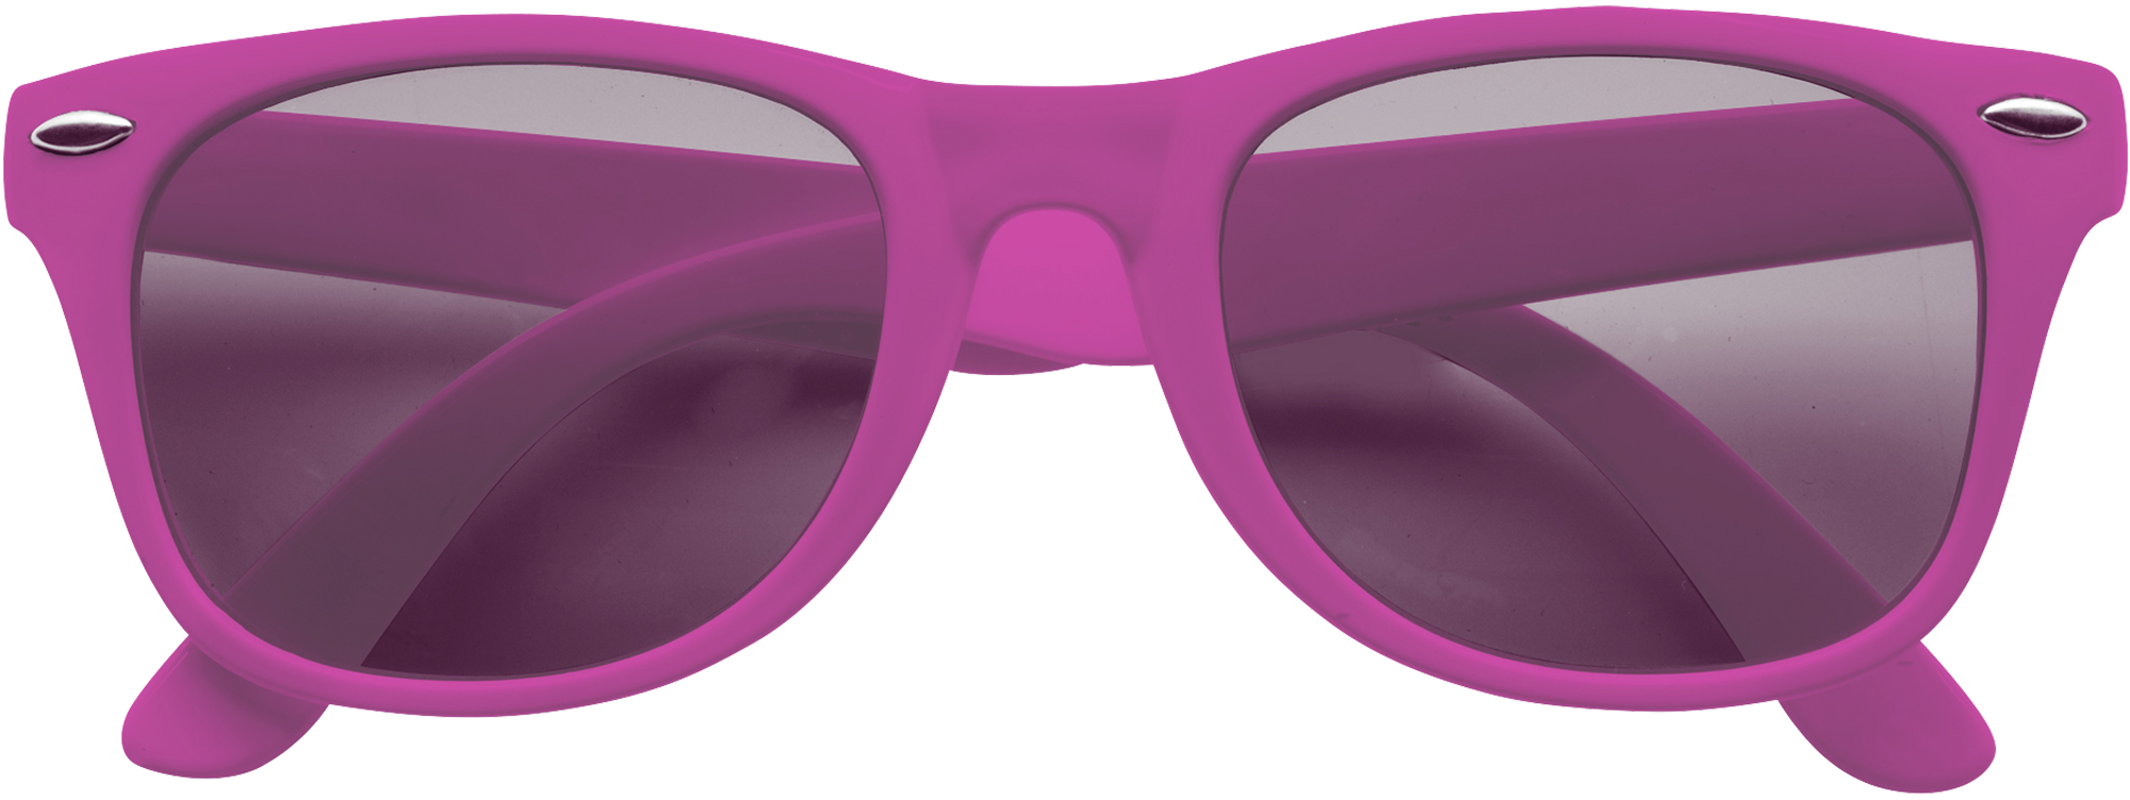 Classic sunglasses 9672_017 (Pink)